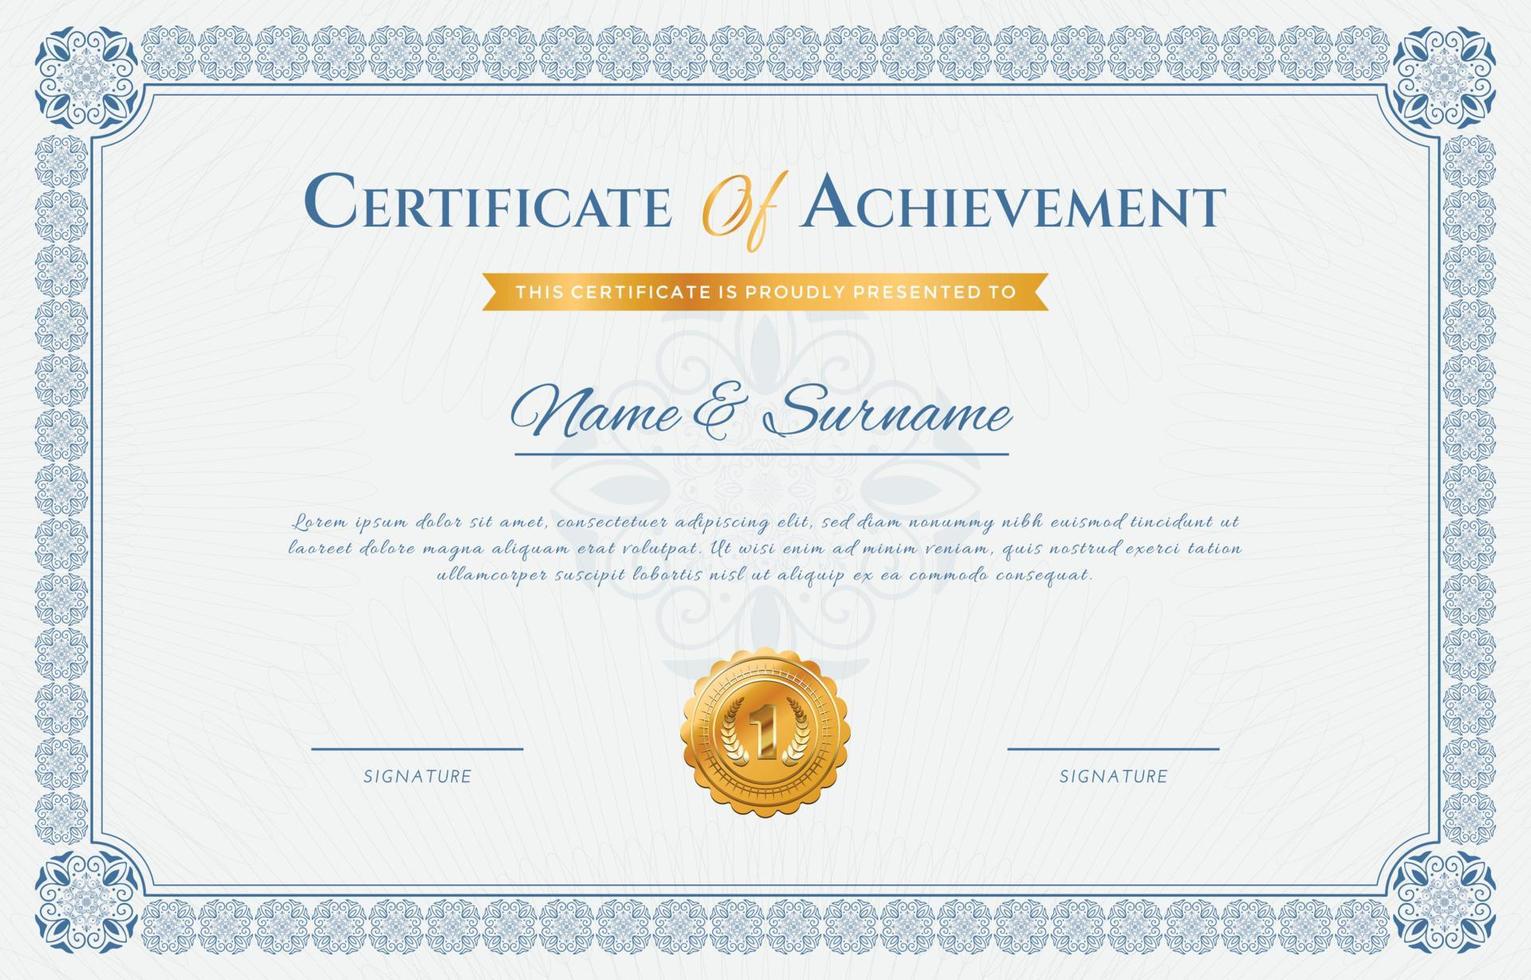 certificado de logro para la plantilla de graduación escolar vector